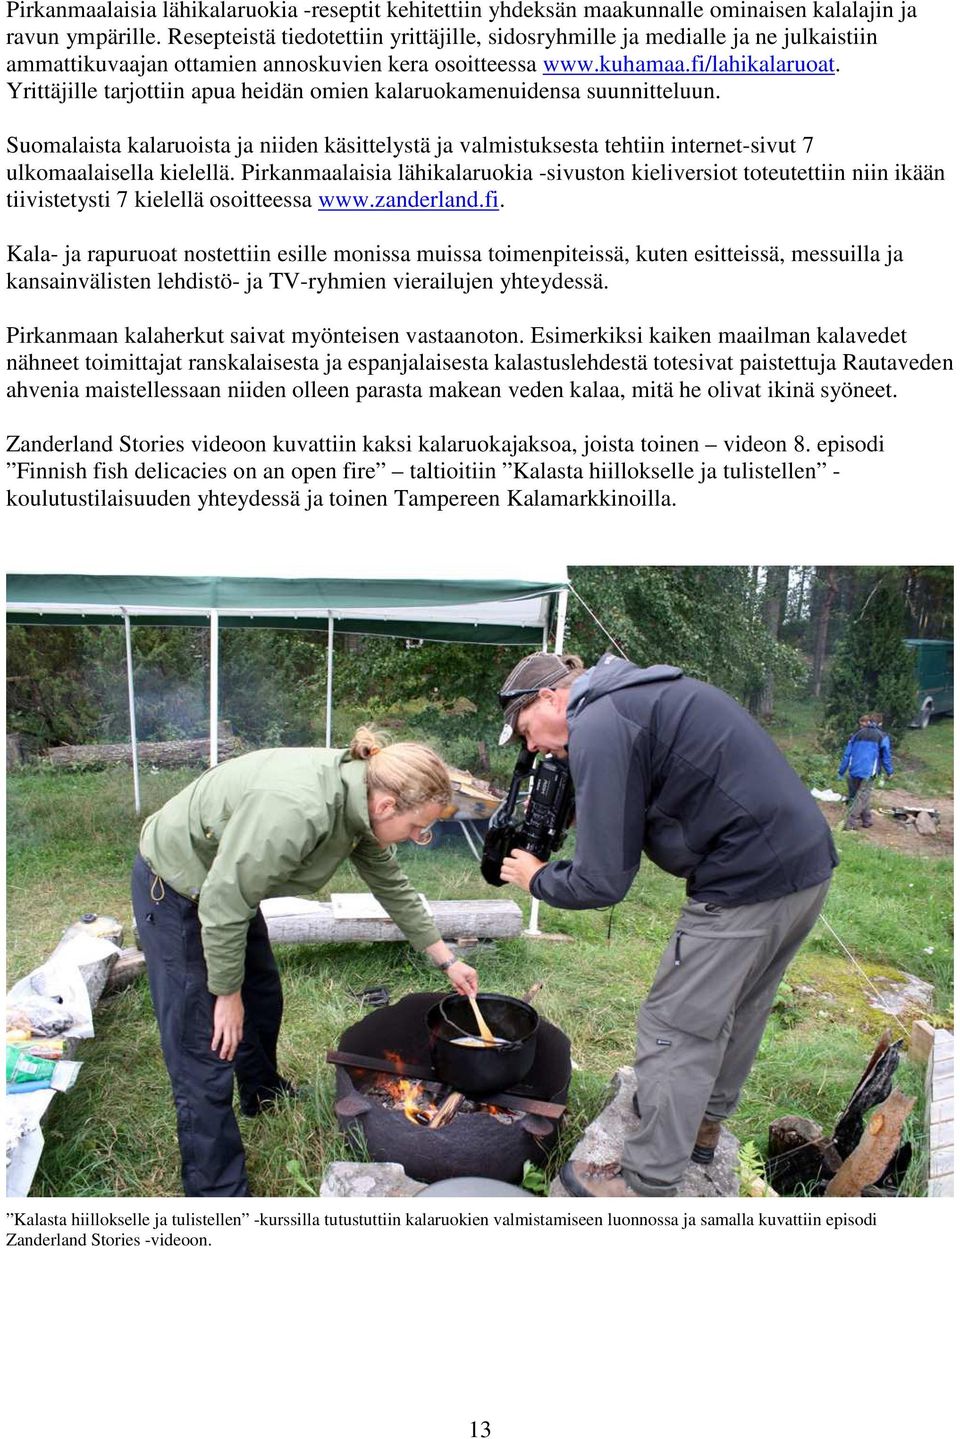 Yrittäjille tarjottiin apua heidän omien kalaruokamenuidensa suunnitteluun. Suomalaista kalaruoista ja niiden käsittelystä ja valmistuksesta tehtiin internet-sivut 7 ulkomaalaisella kielellä.